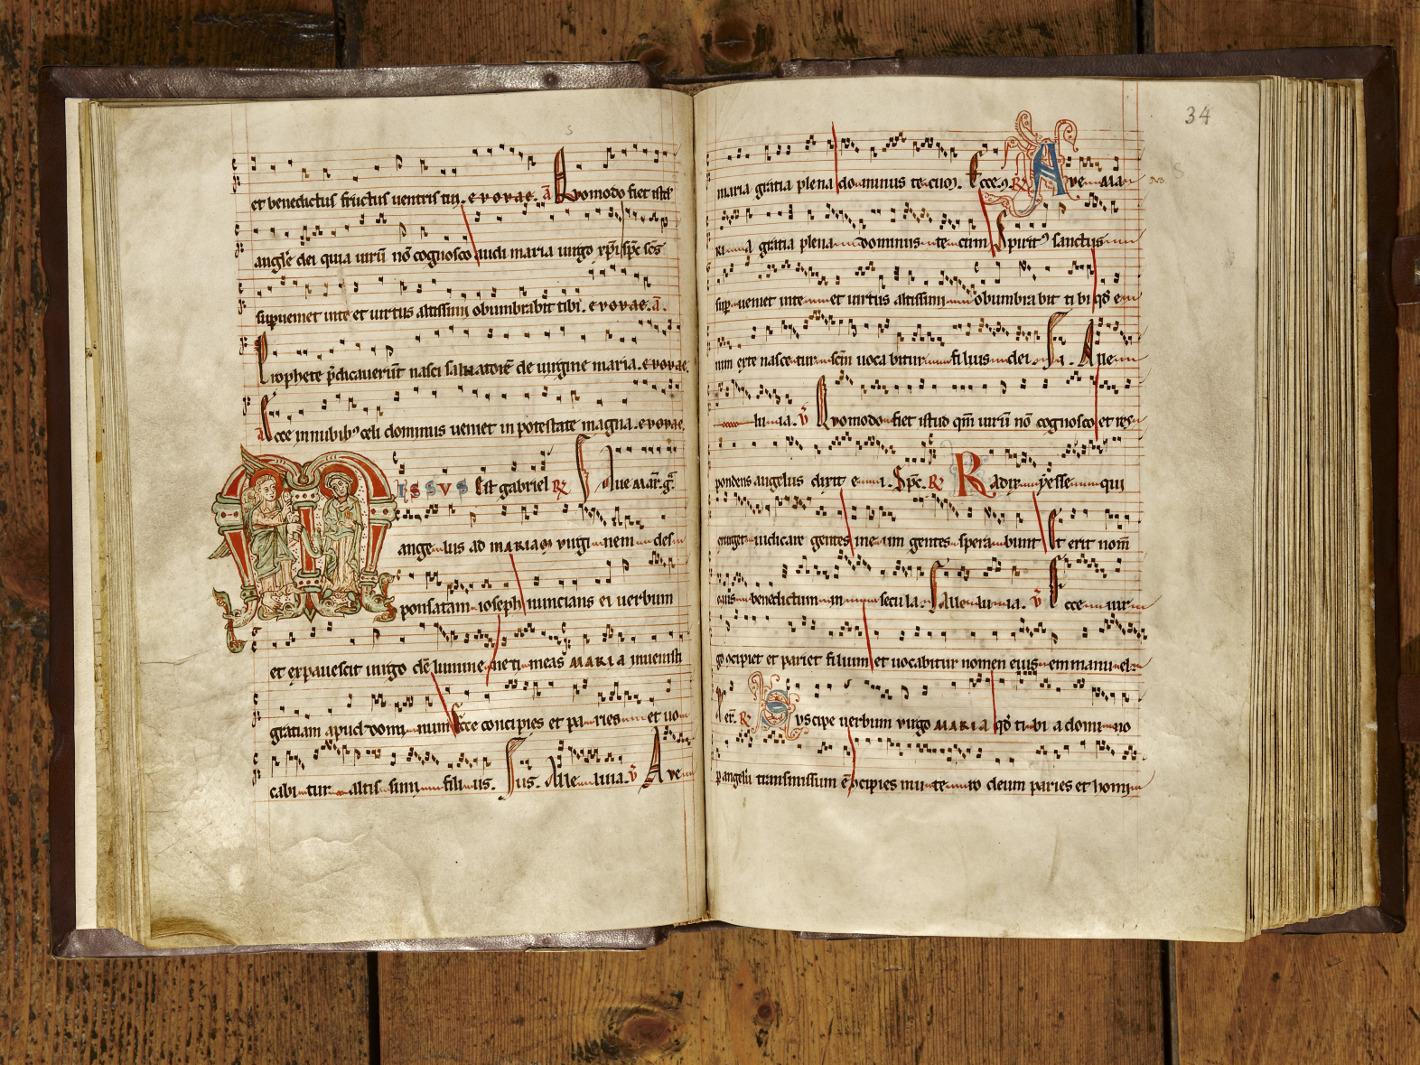 Kloster Maulbronn, Antiphonar aus dem Jahr 1249, ein liturgisches Buch für das Stundengebet